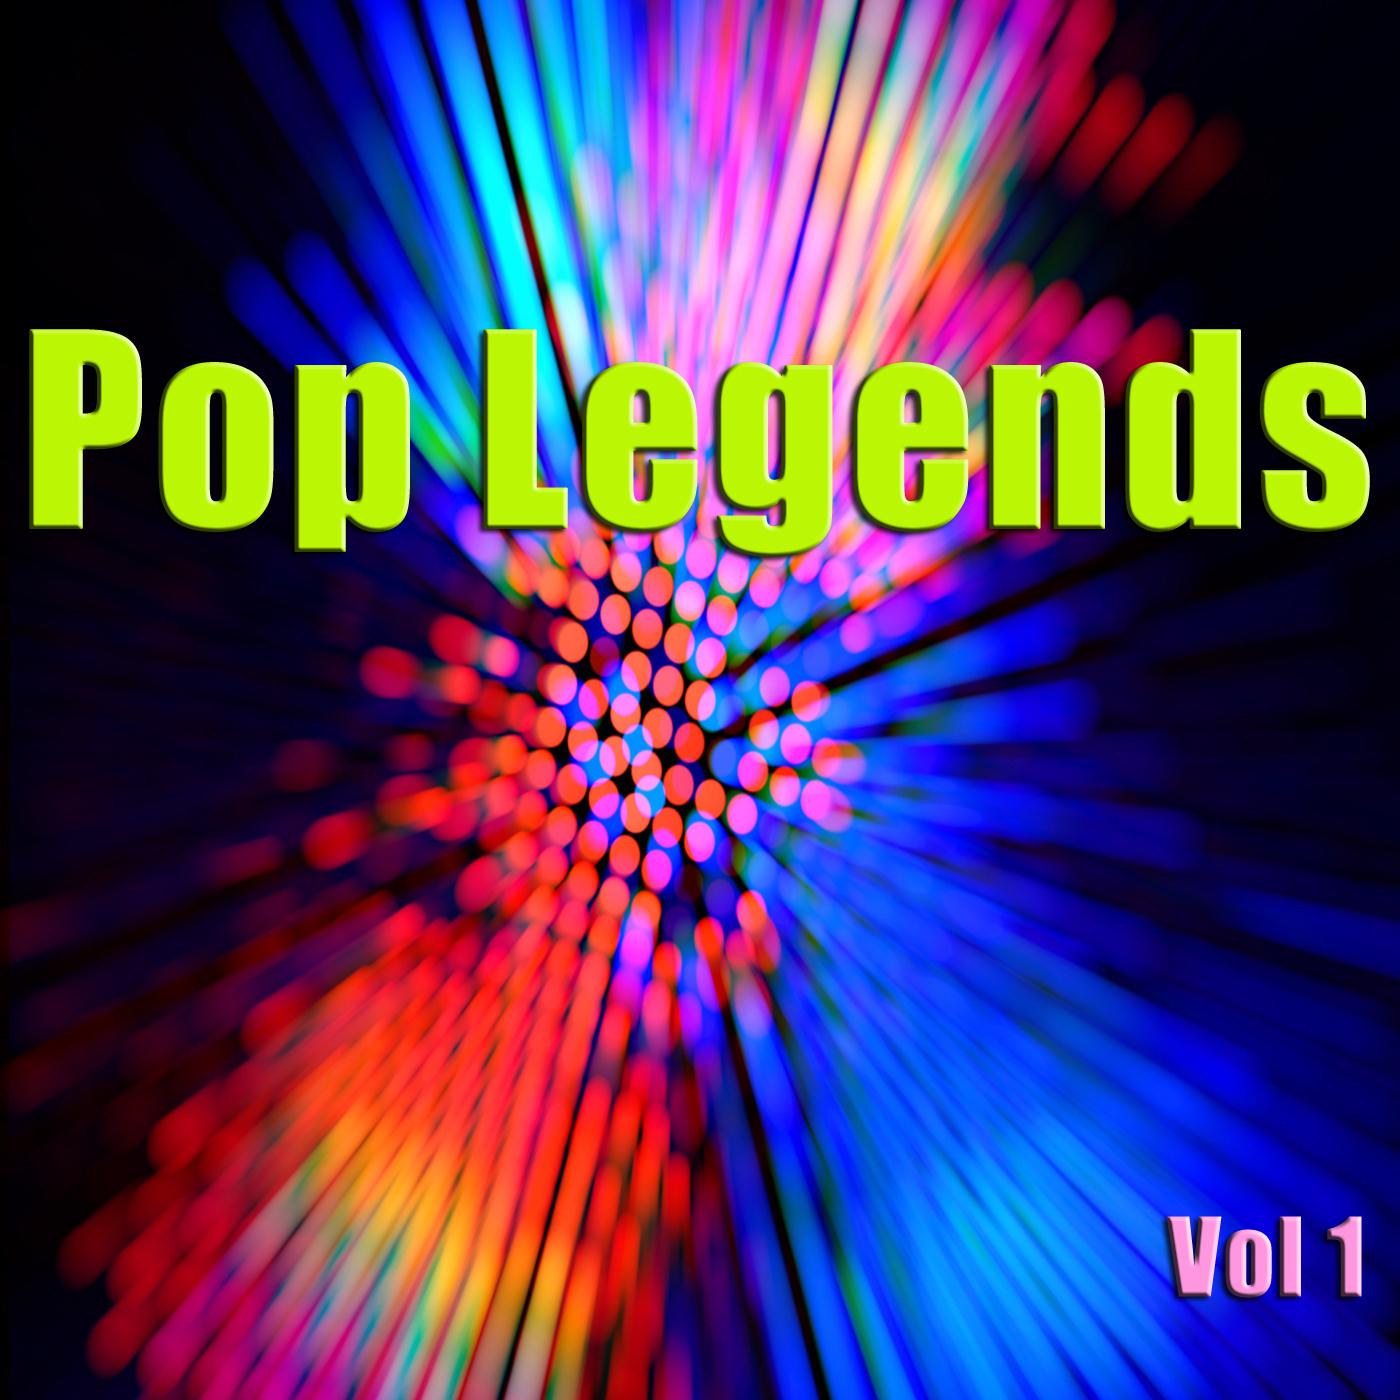 Pop Legends Vol 1